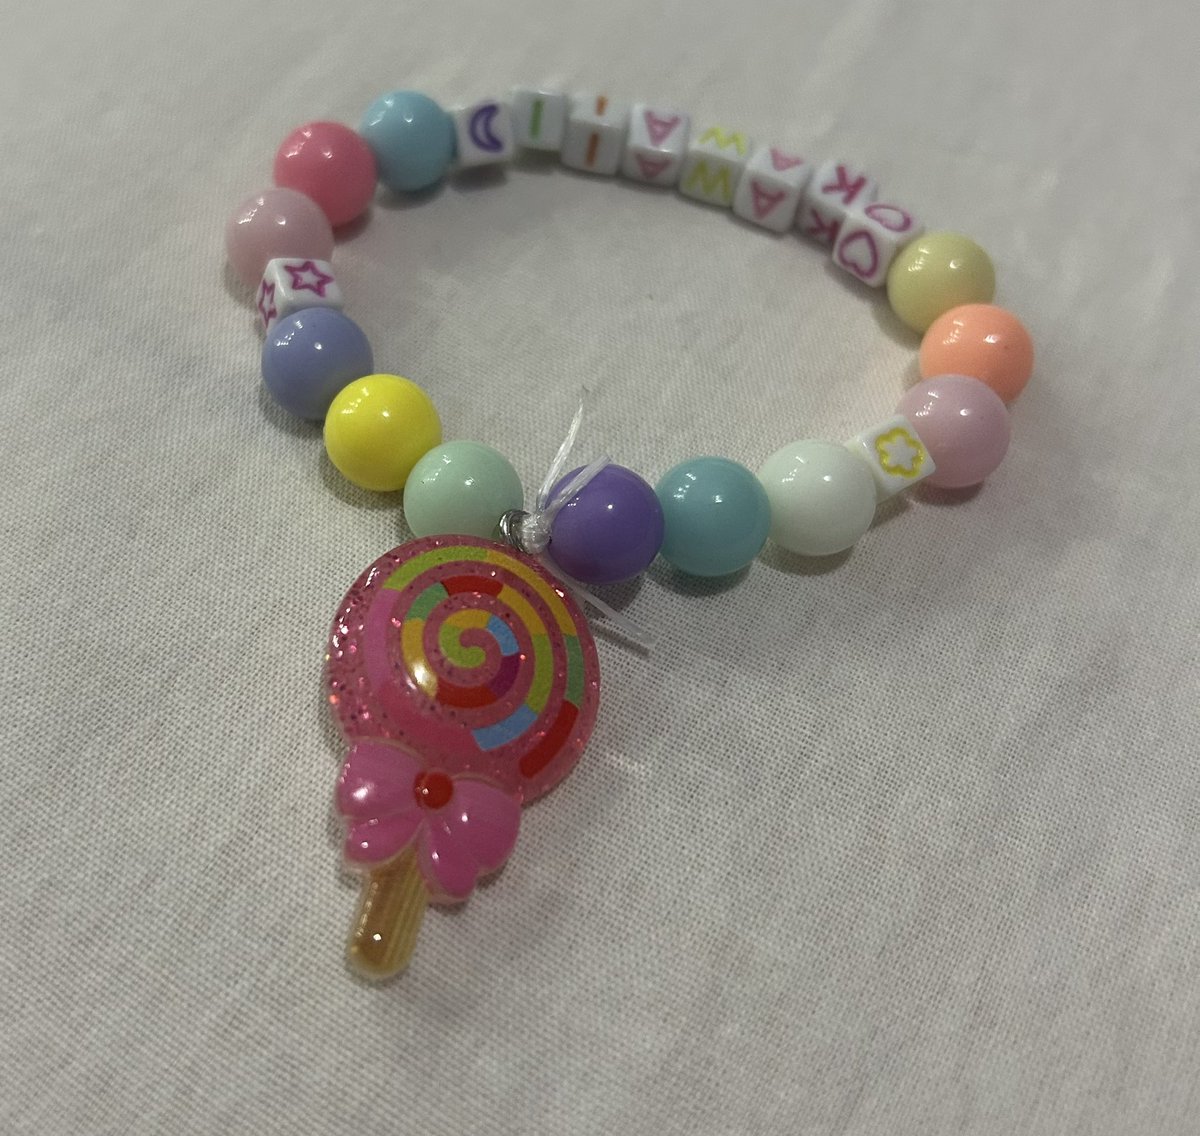 A lollipop in my beaded bracelet #beadjewelry #beads